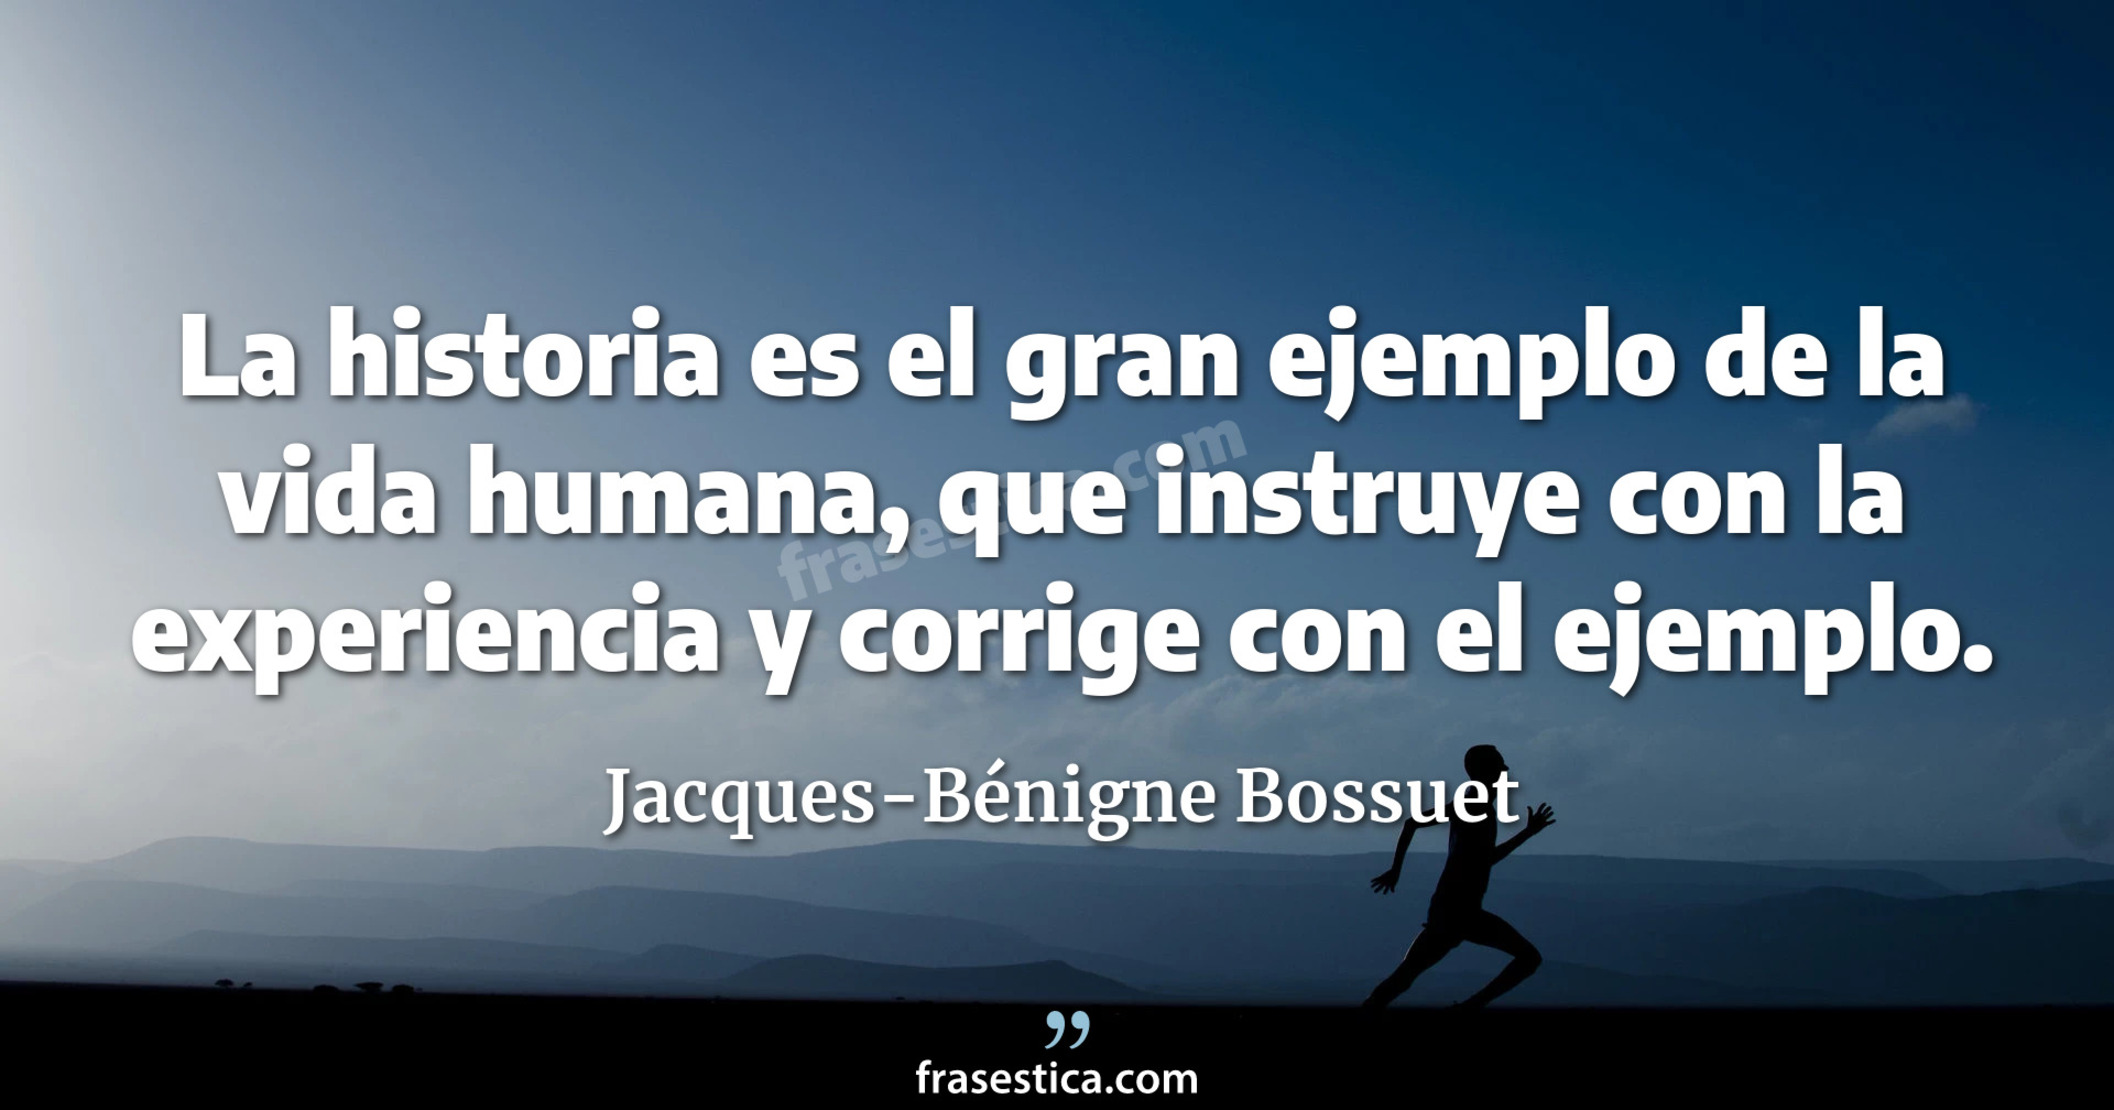 La historia es el gran ejemplo de la vida humana, que instruye con la experiencia y corrige con el ejemplo. - Jacques-Bénigne Bossuet